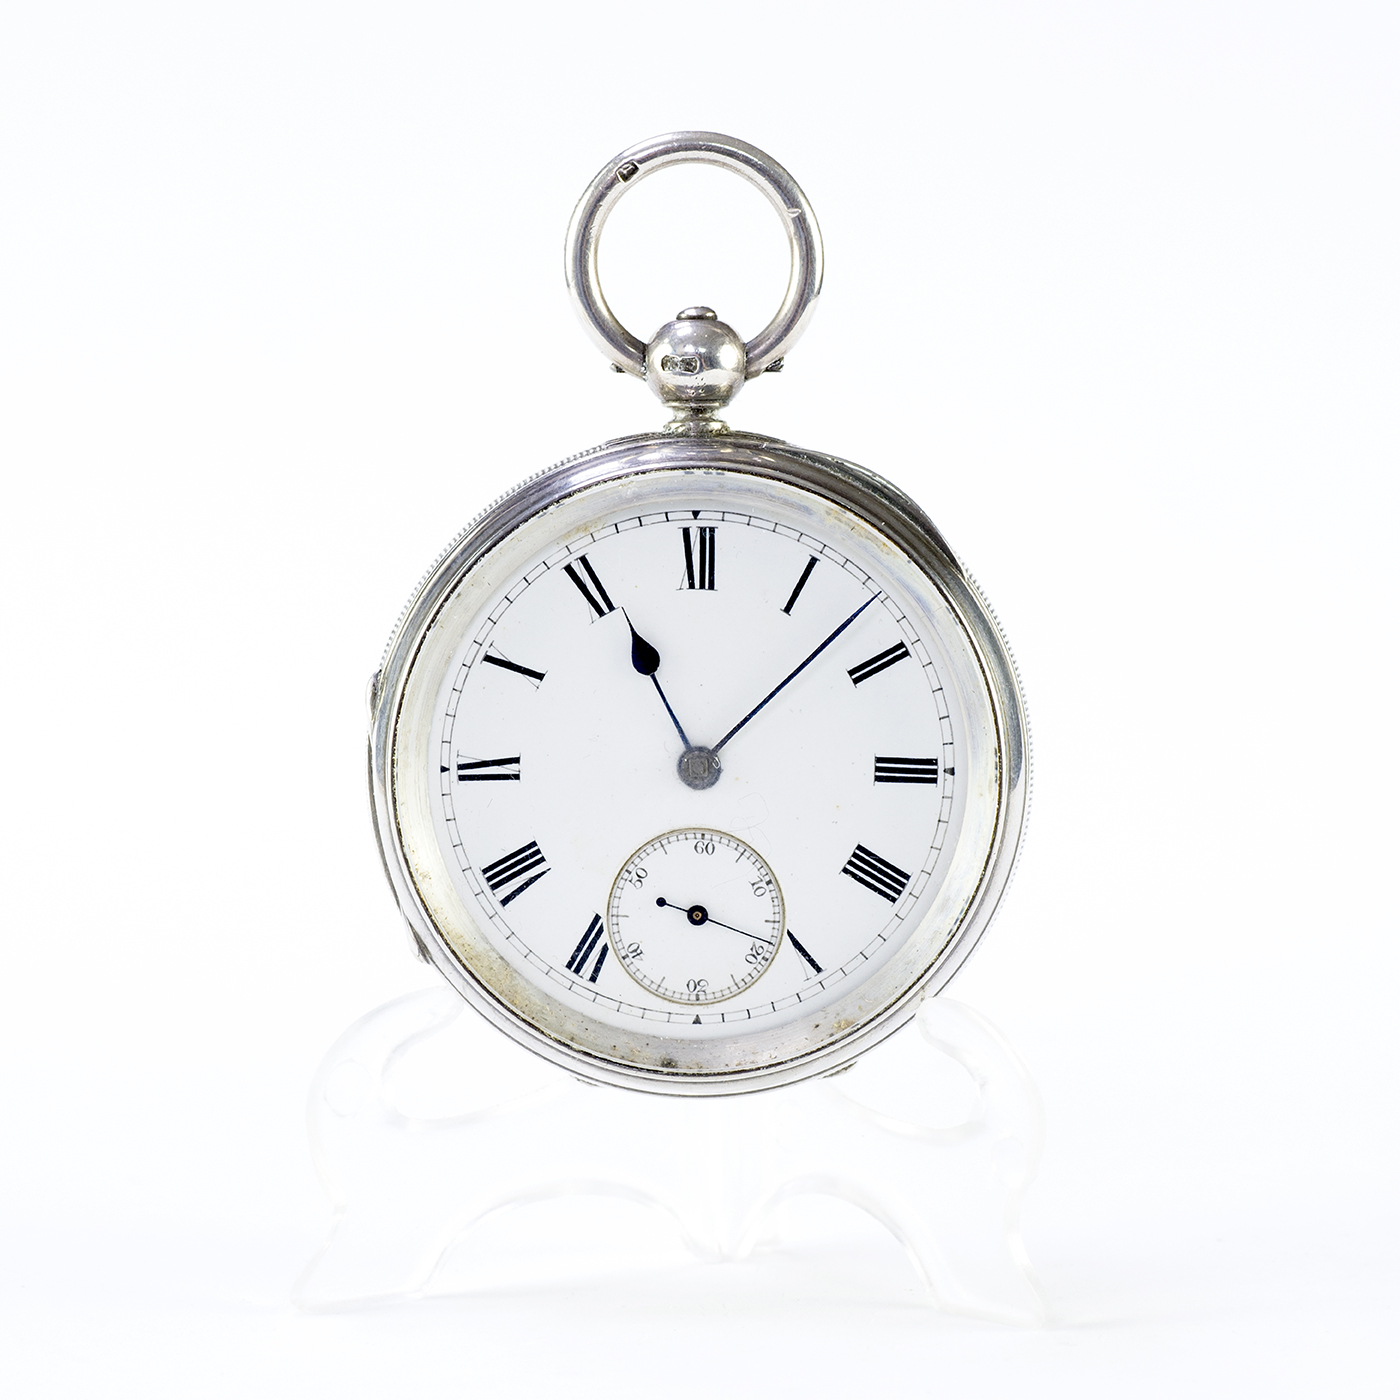 Reloj de bolsillo inglés, lepine, Half Fusee (Semicatalino). Londres, 1885.